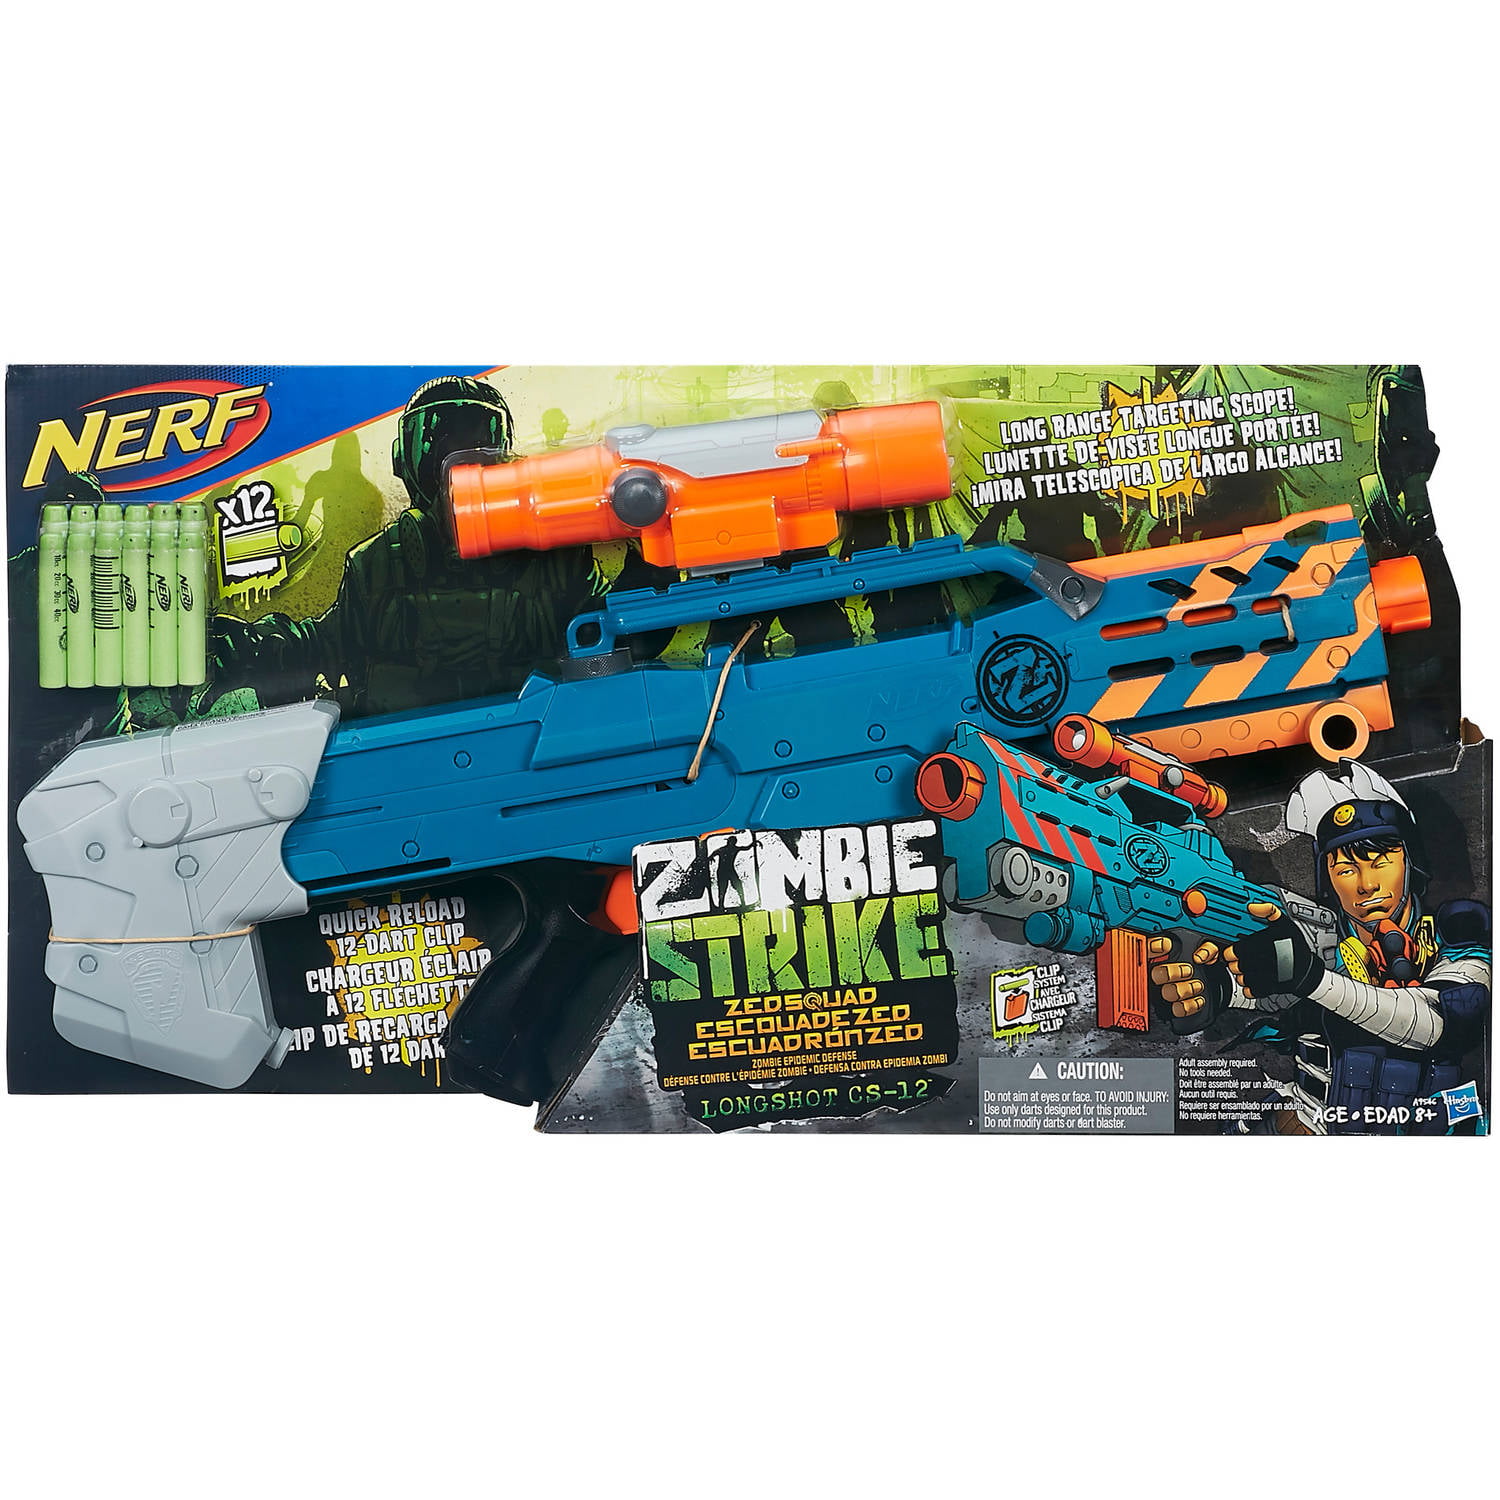 Long Strike Nerf Gun : Target